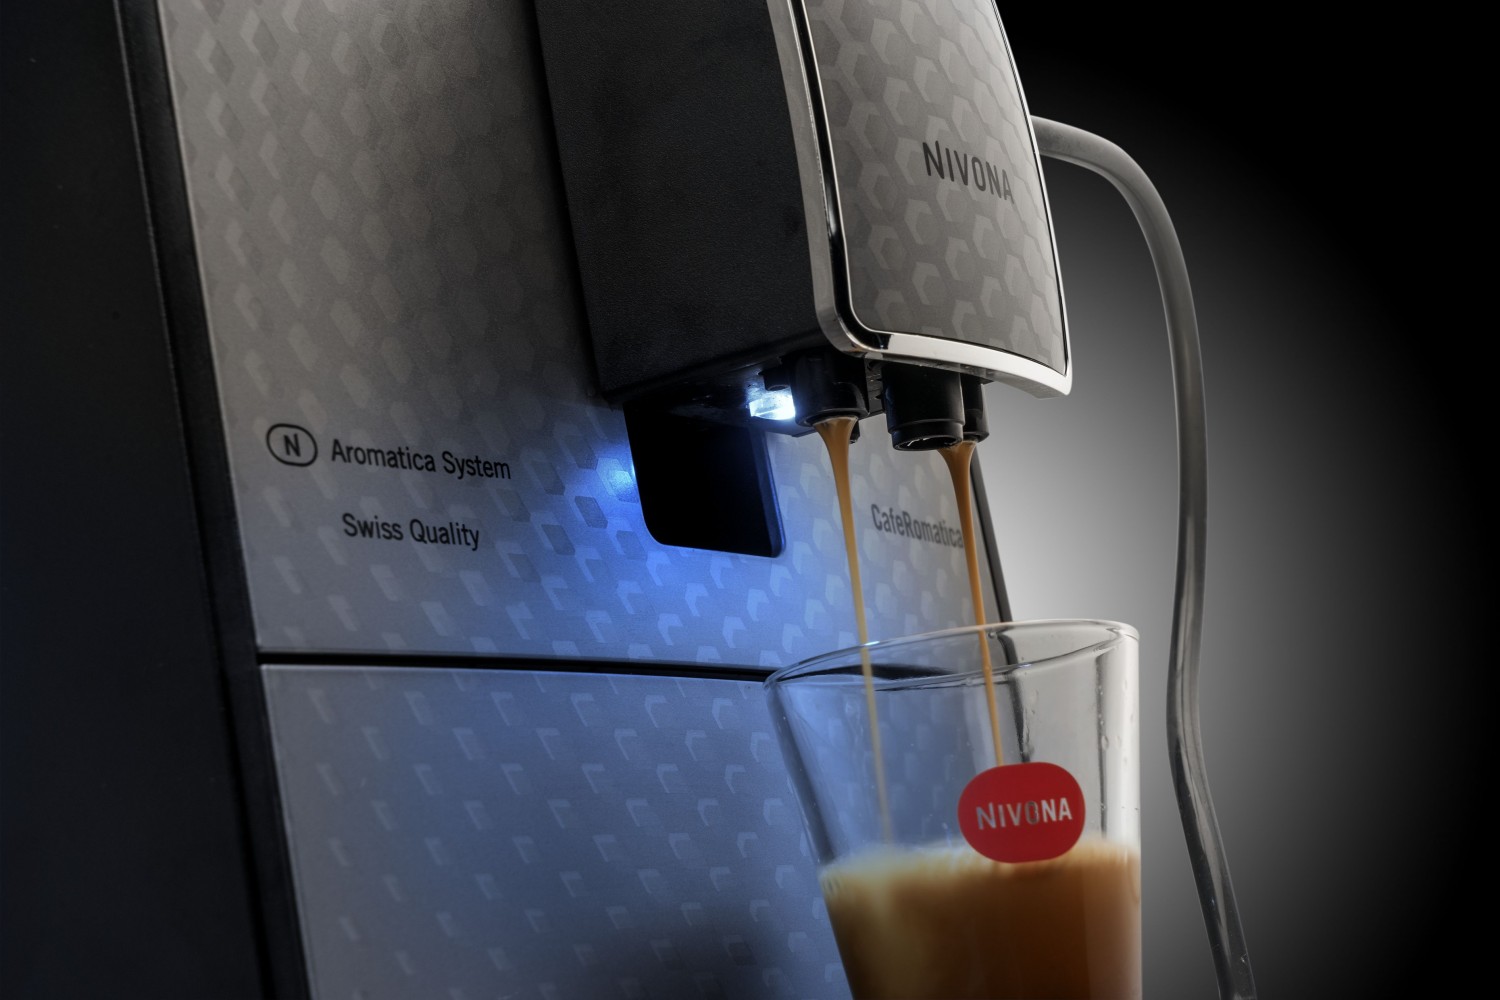 Kaffeevollautomat Nivona CafeRomatica 768 im Test, Bild 3